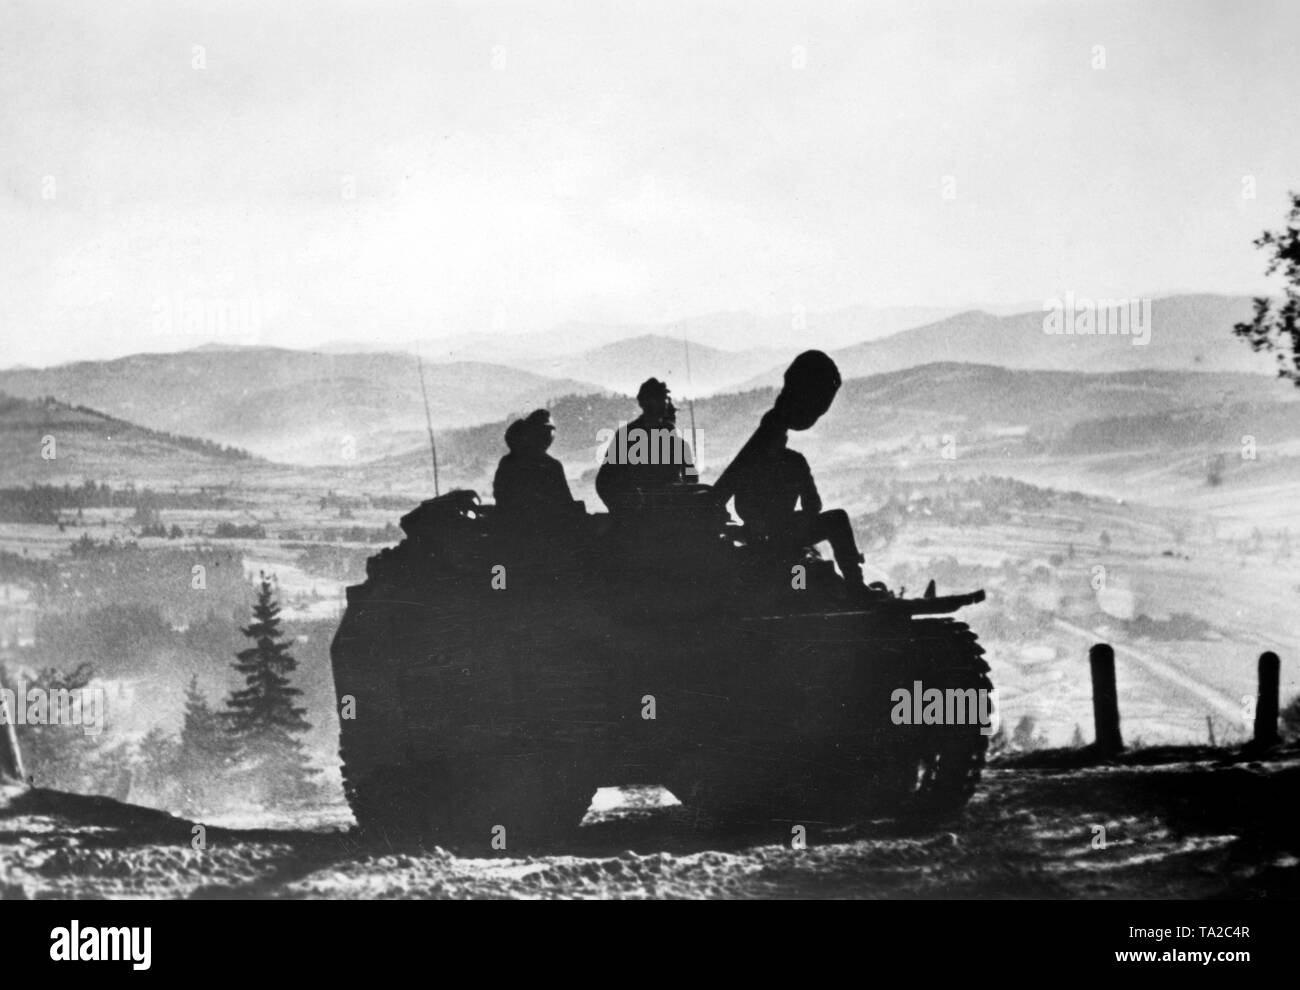 Un réservoir de chasse allemand Jagdpanzer (rouleaux) sur un étroit chemin de terre, dans les Carpates. Photo de l'entreprise de propagande (PK) : correspondant de guerre Springmann. Banque D'Images